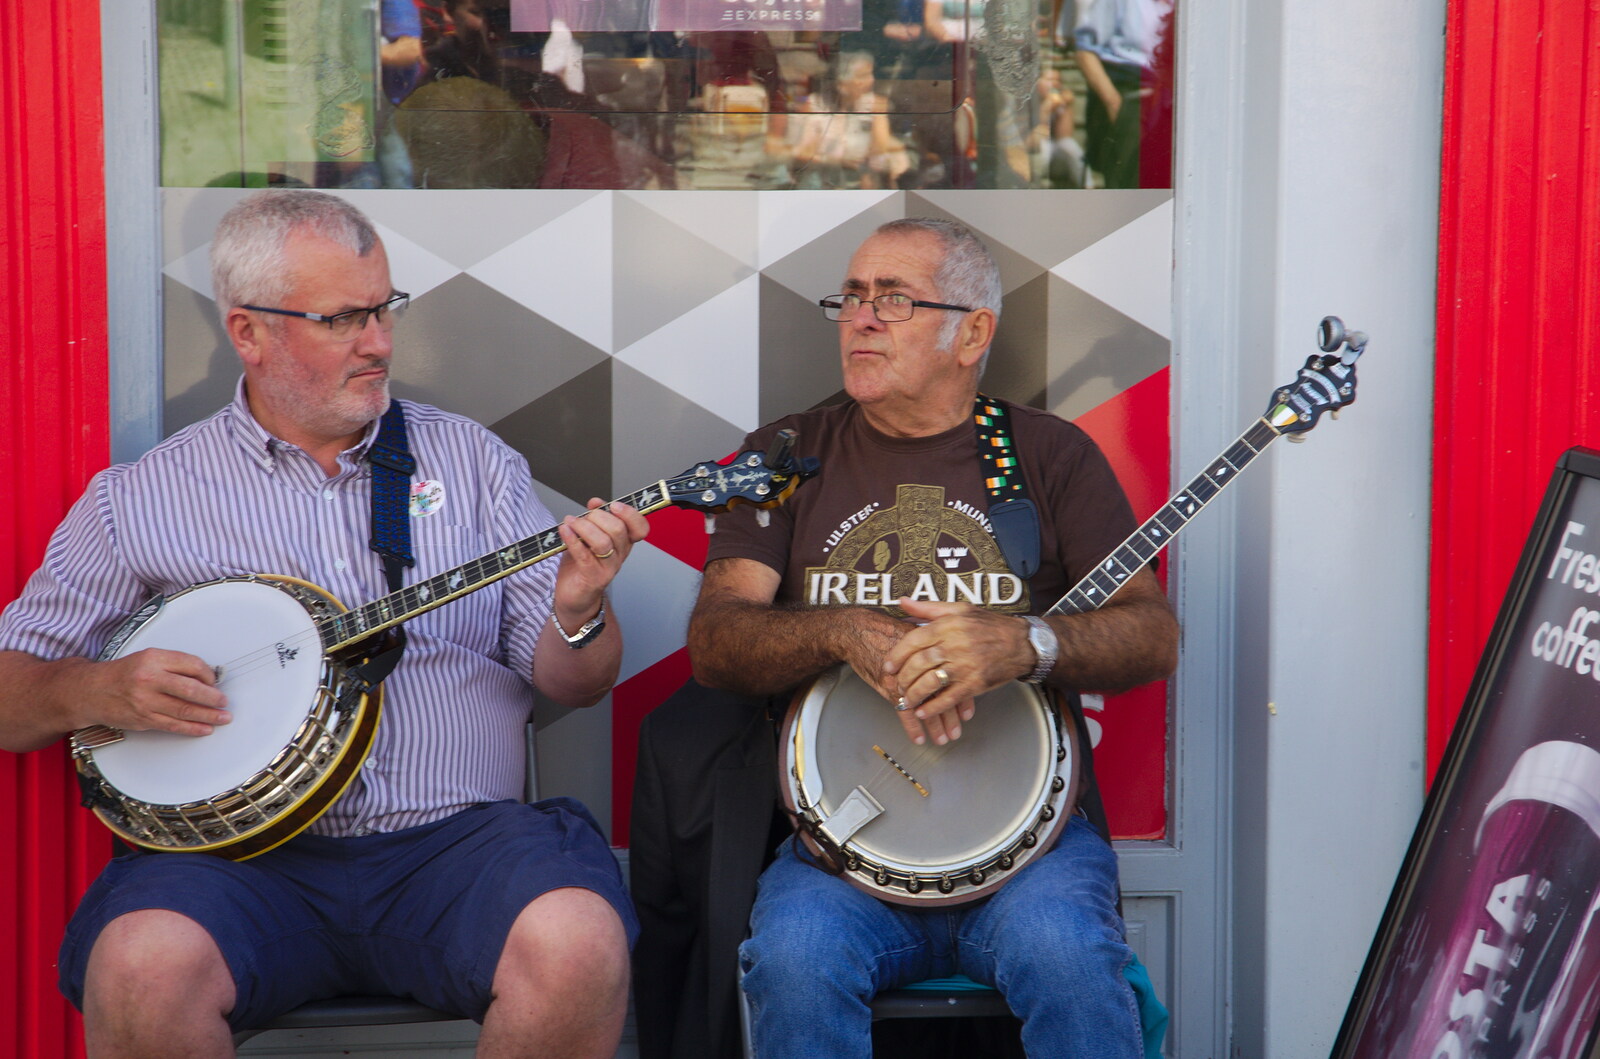 A couple of banjo players from The Fleadh Cheoil na hÉireann, Droichead Átha, Co. Louth, Ireland - 13th August 2019